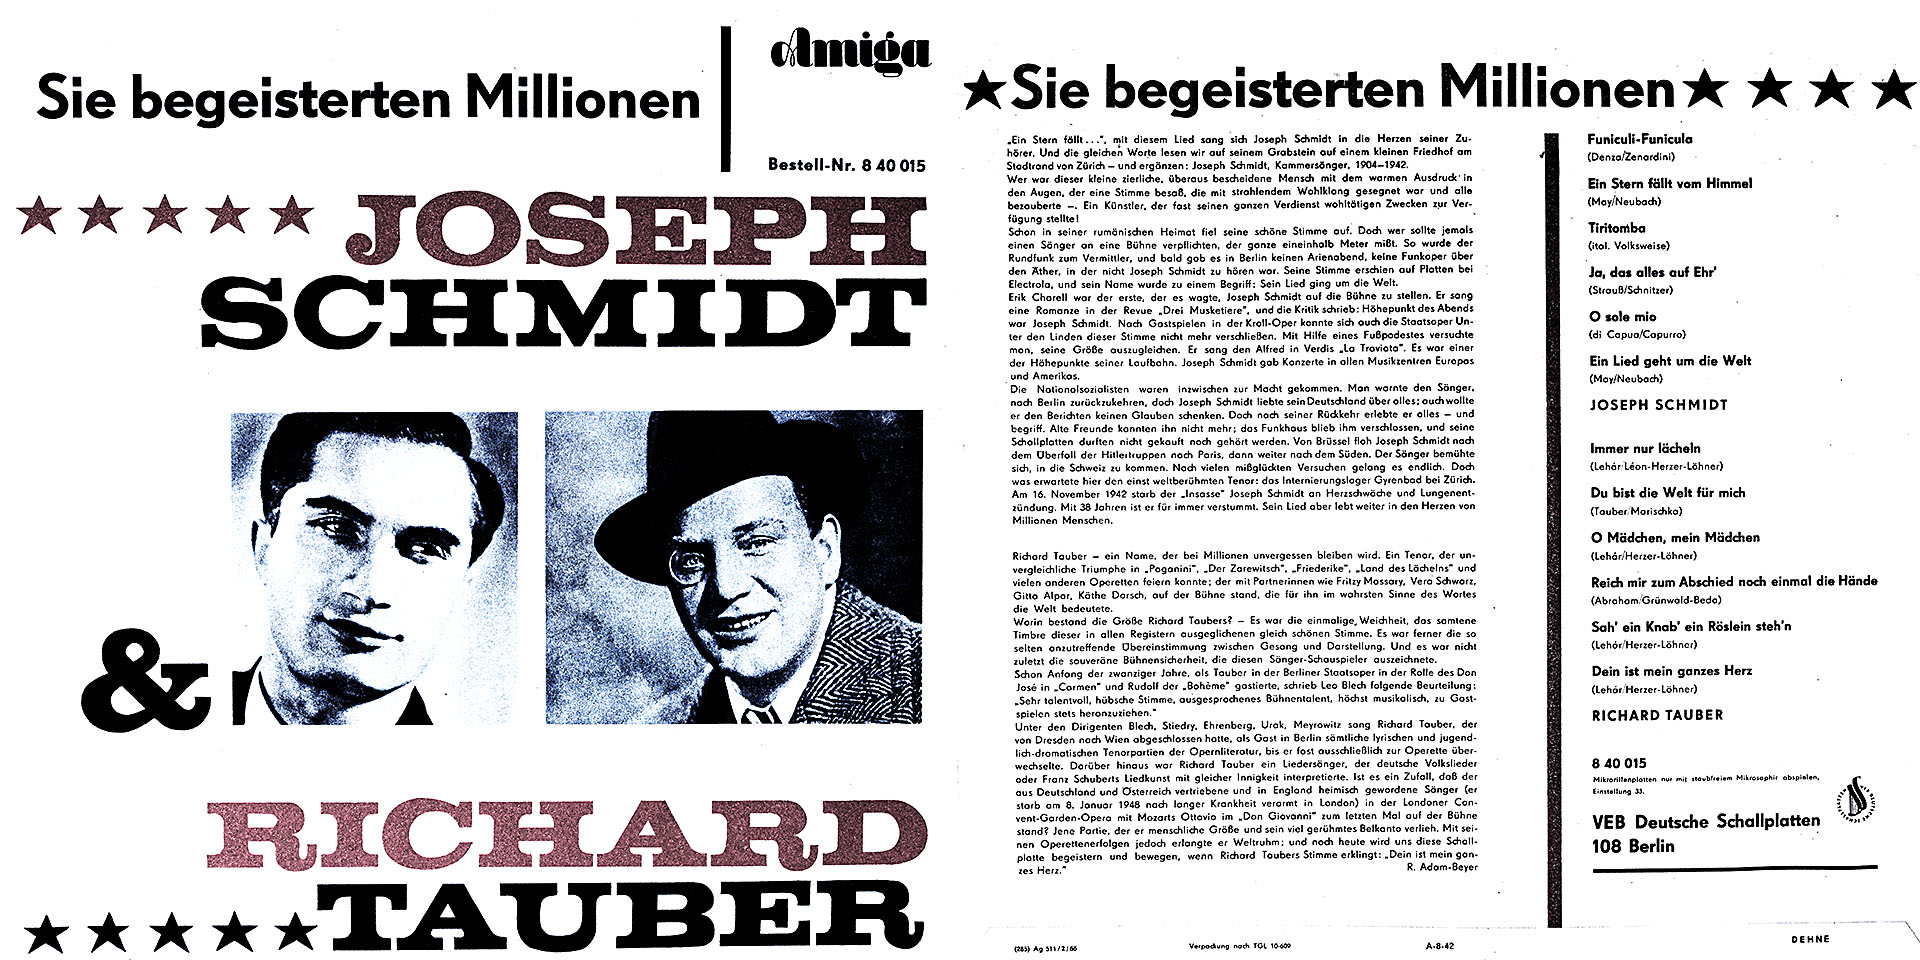 Sie begeisterten Millionen - Joseph Schmidt und Richard Tauber